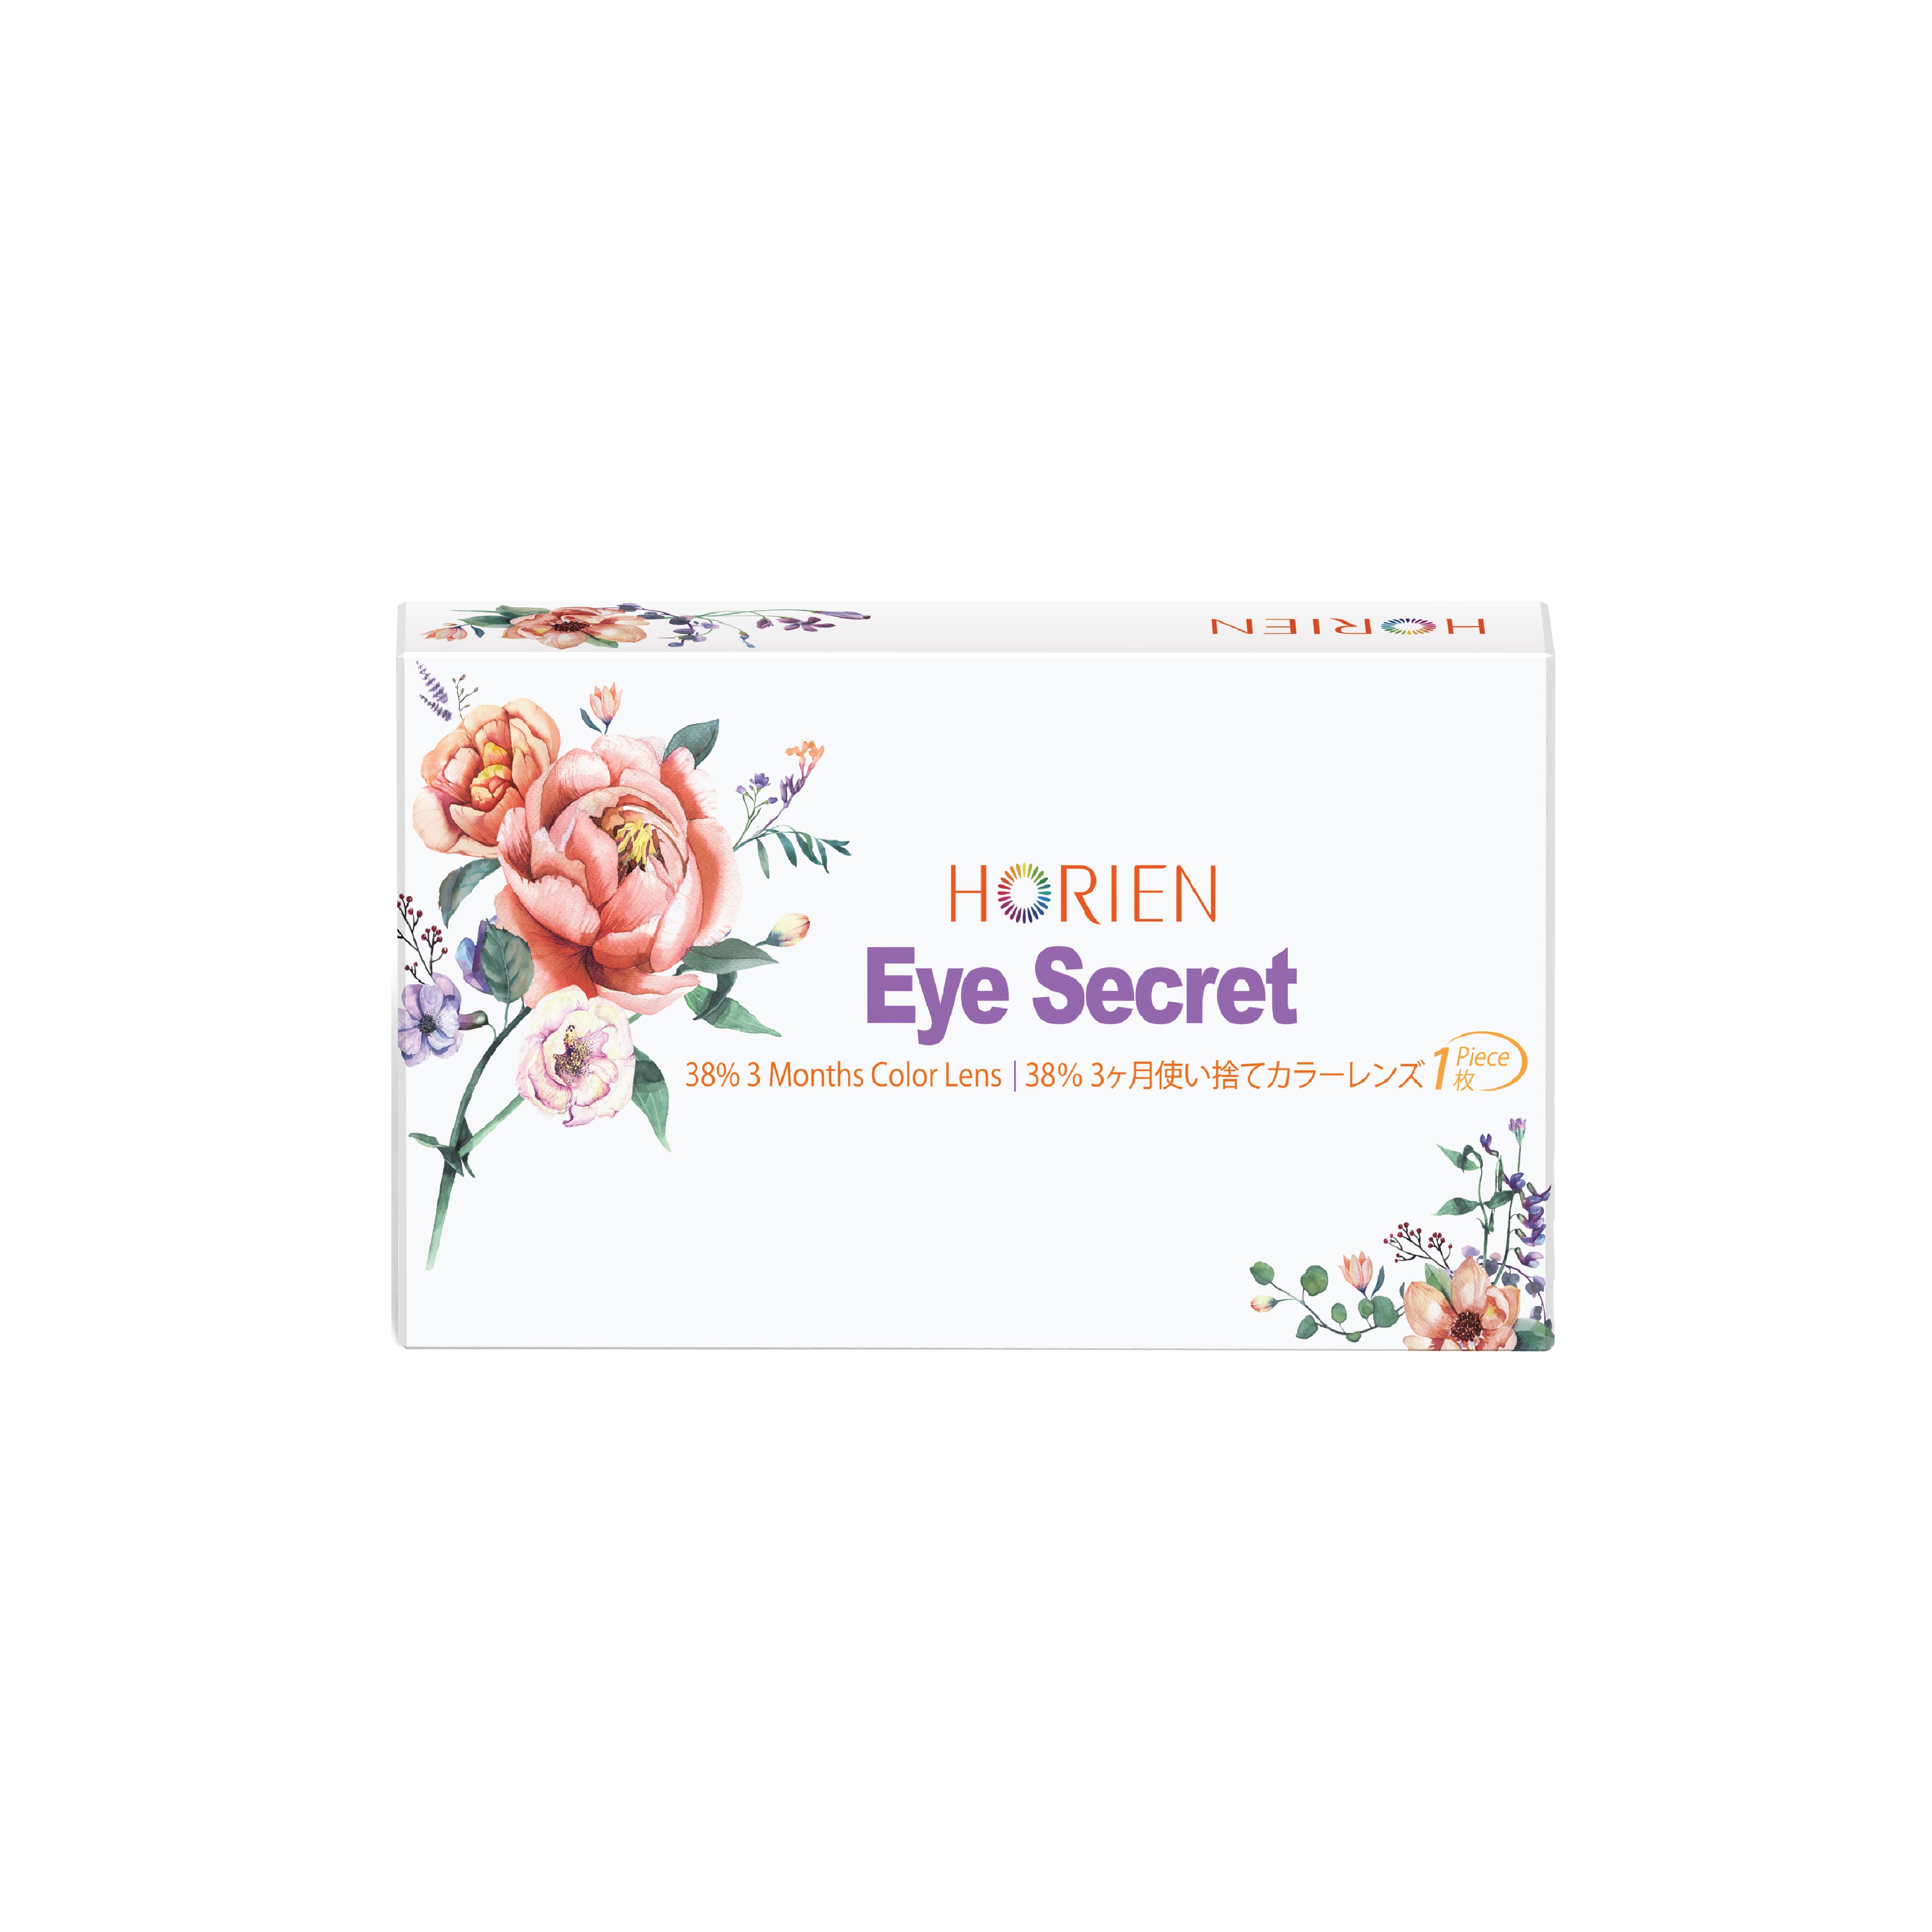 Horien Eye Secret 3 Months Color Lens (1 PCS)